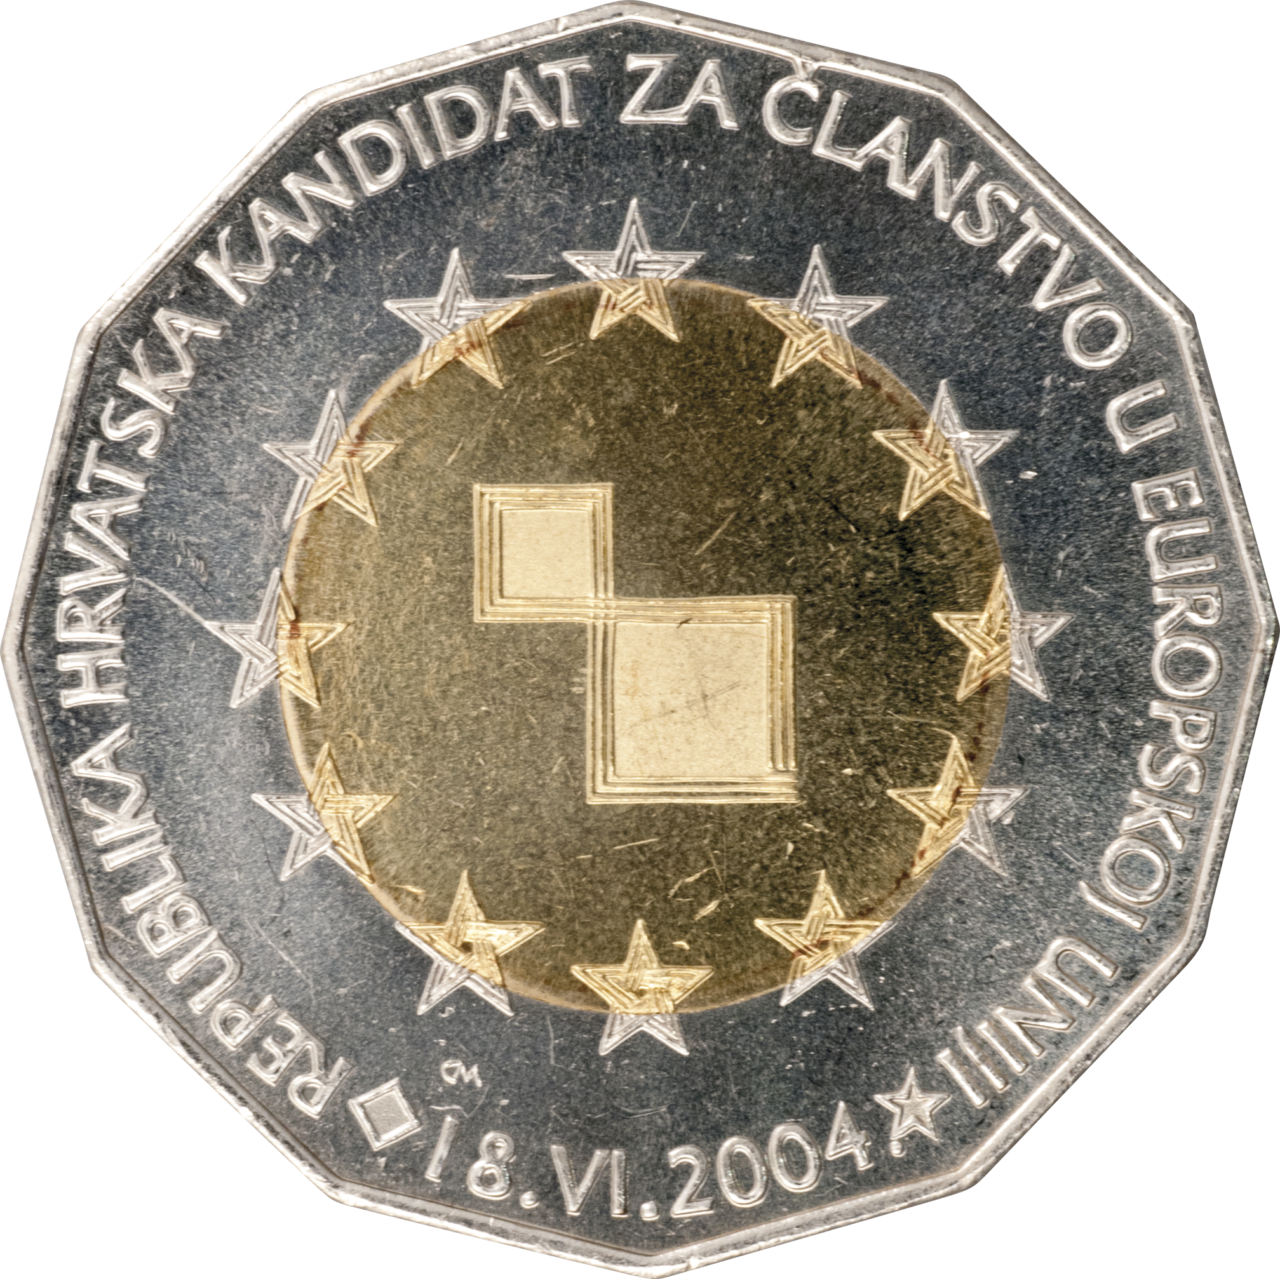 25 kuna - Republika Hrvatska kandidat za članstvo u Europskoj uniji, 18. VI. 2004.